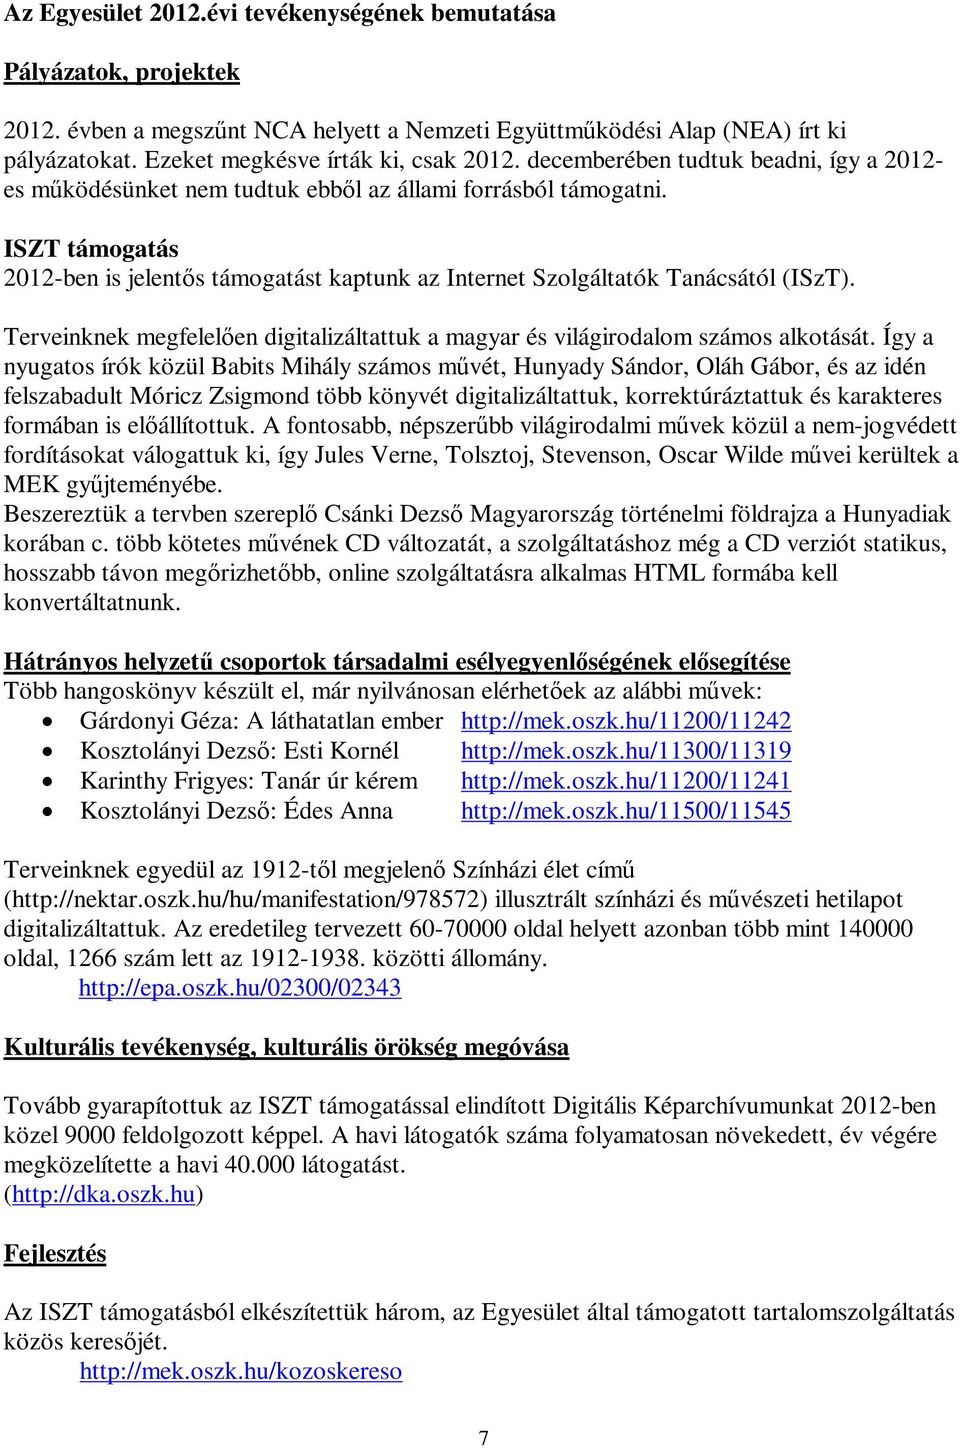 ISZT támogatás 2012-ben is jelentős támogatást kaptunk az Internet Szolgáltatók Tanácsától (ISzT). Terveinknek megfelelően digitalizáltattuk a magyar és világirodalom számos alkotását.